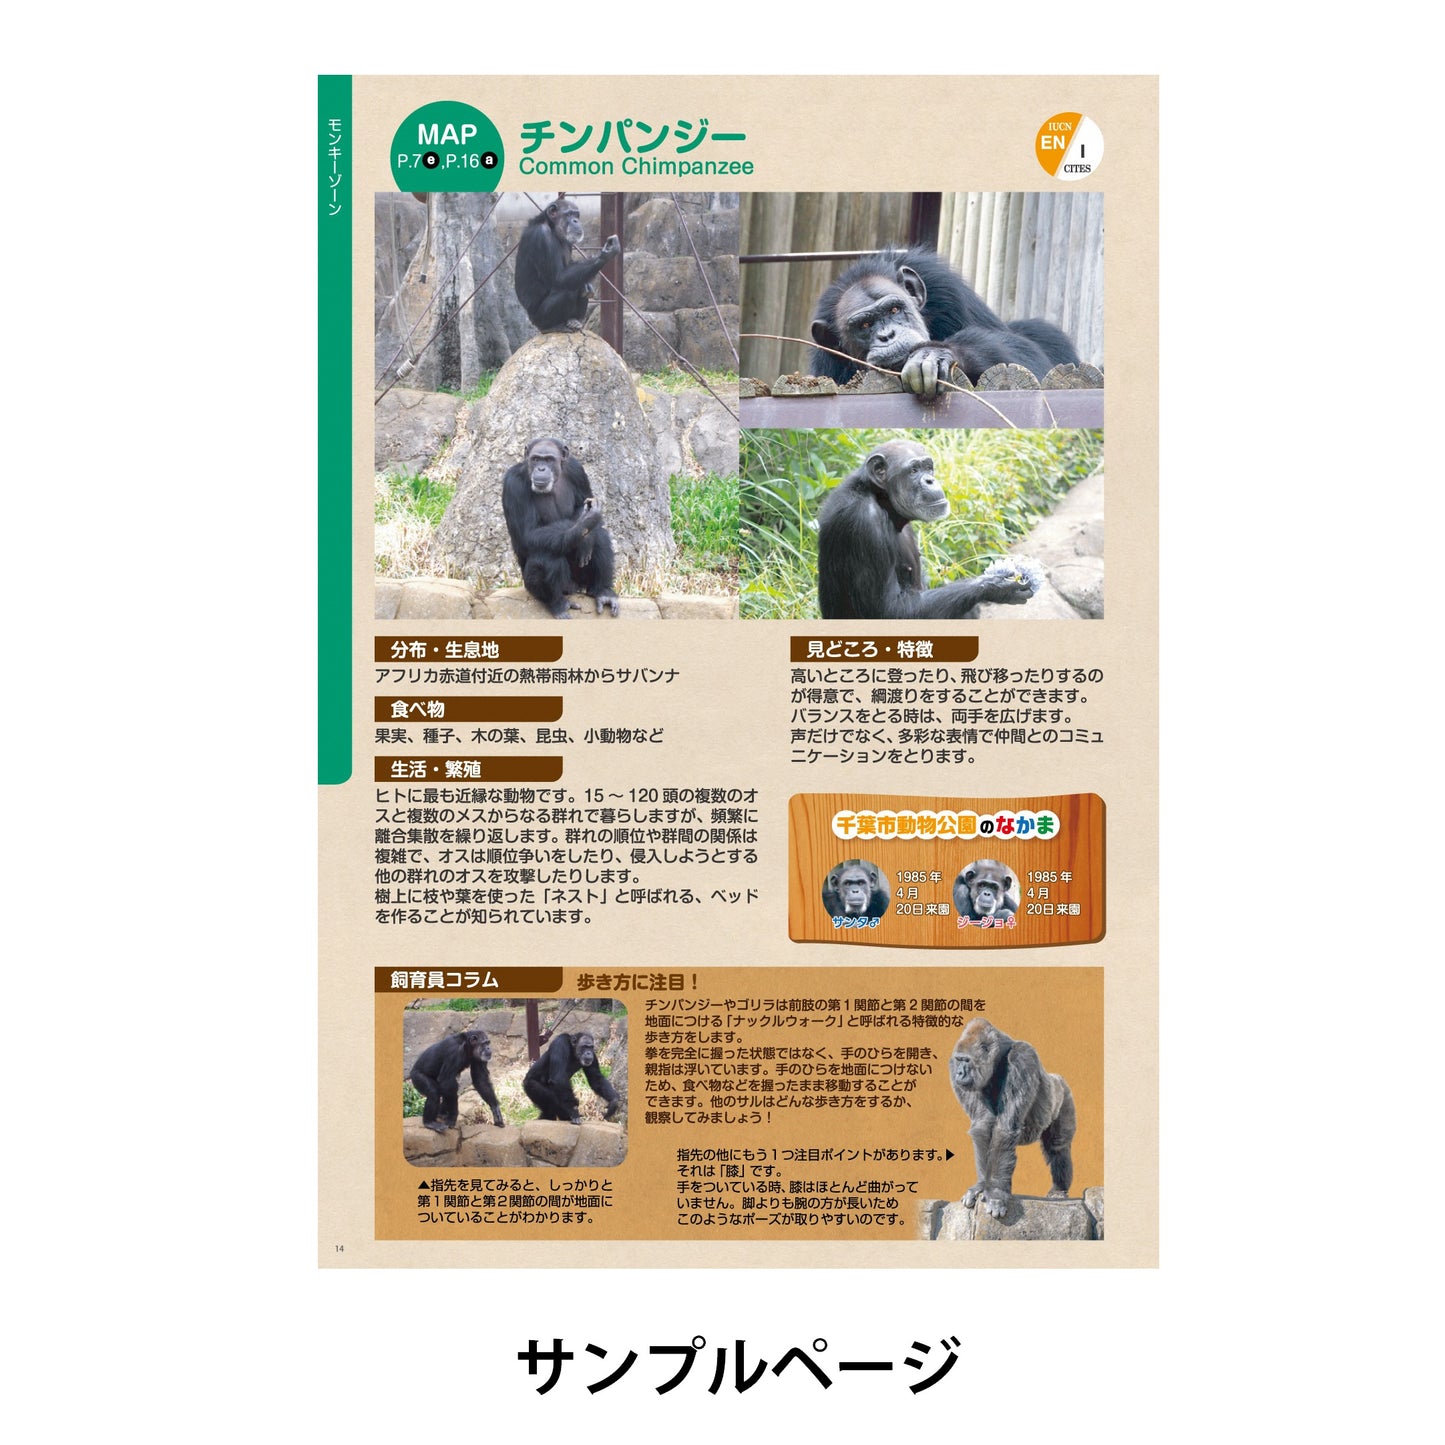 I. 千葉市動物公園 ガイドブック